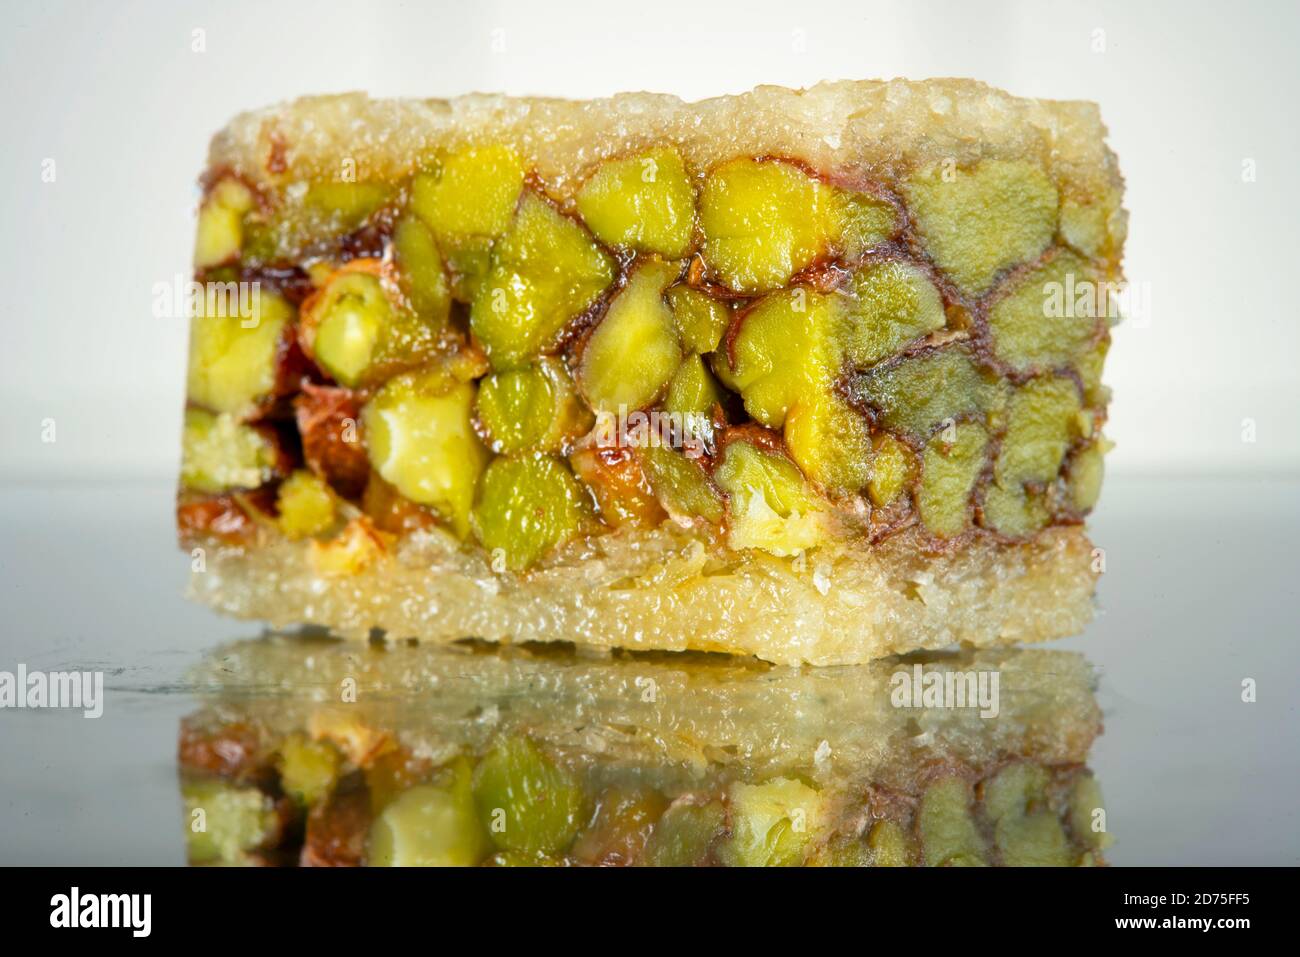 Syrische Baklava Desserts, Süßigkeiten, süßes Gebäck mit Mandeln, Pistazien  oder Nüssen, in der Regel mit Zuckersirup gebunden Stockfotografie - Alamy